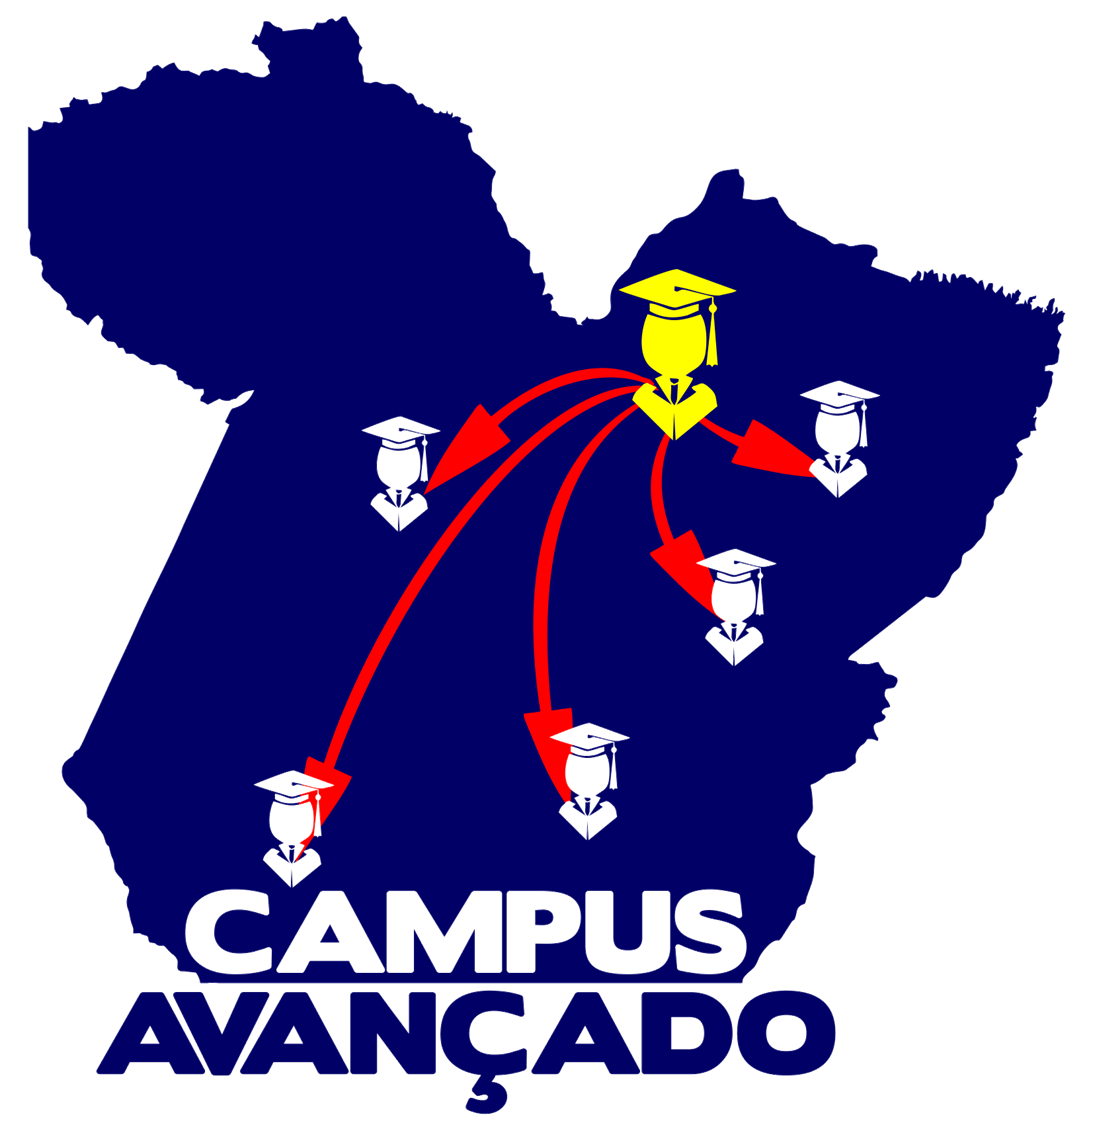 Campus-Avancado logo